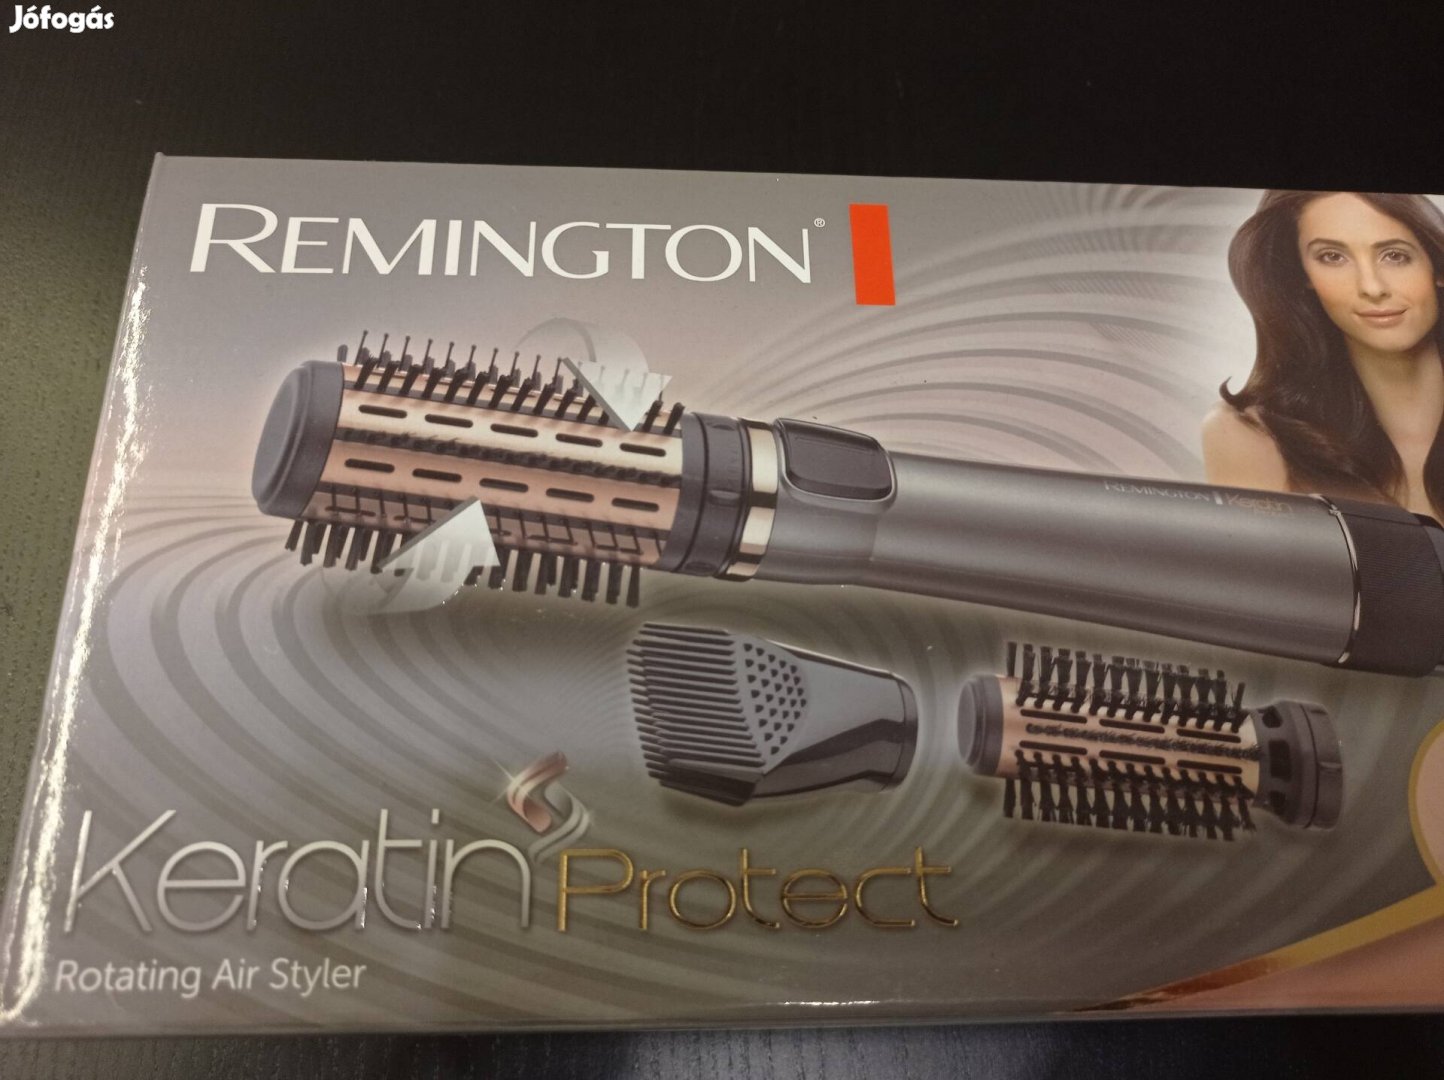 Remington hajszárító, meleg levegős hajformázó, új, tartozékaival